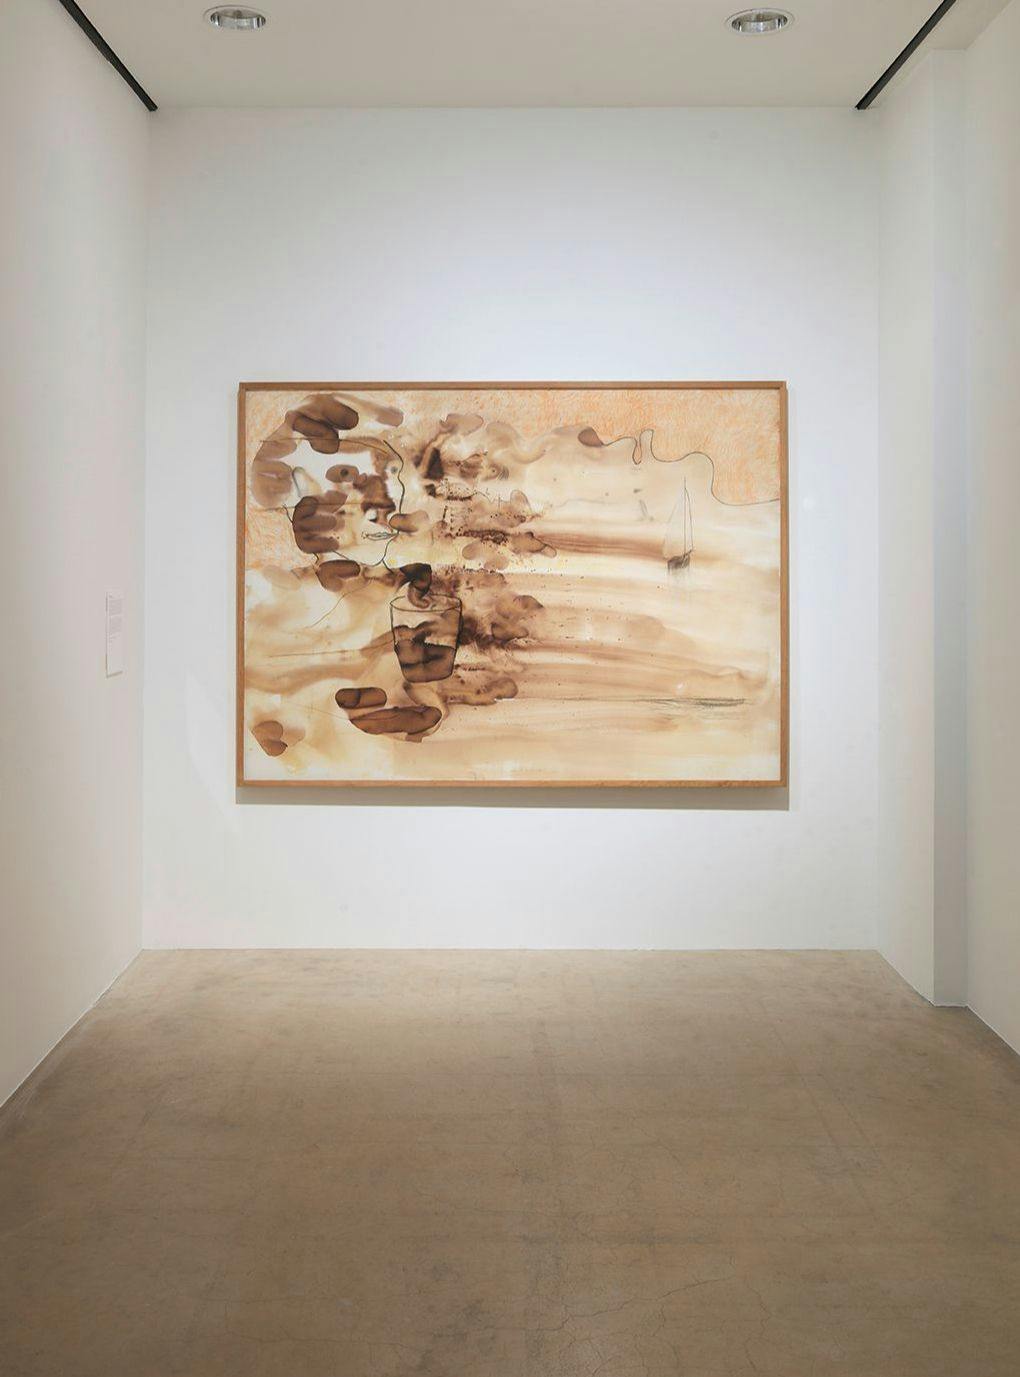 Verk i bruna toner av Erik Dietman i utställningen, mot vit vägg